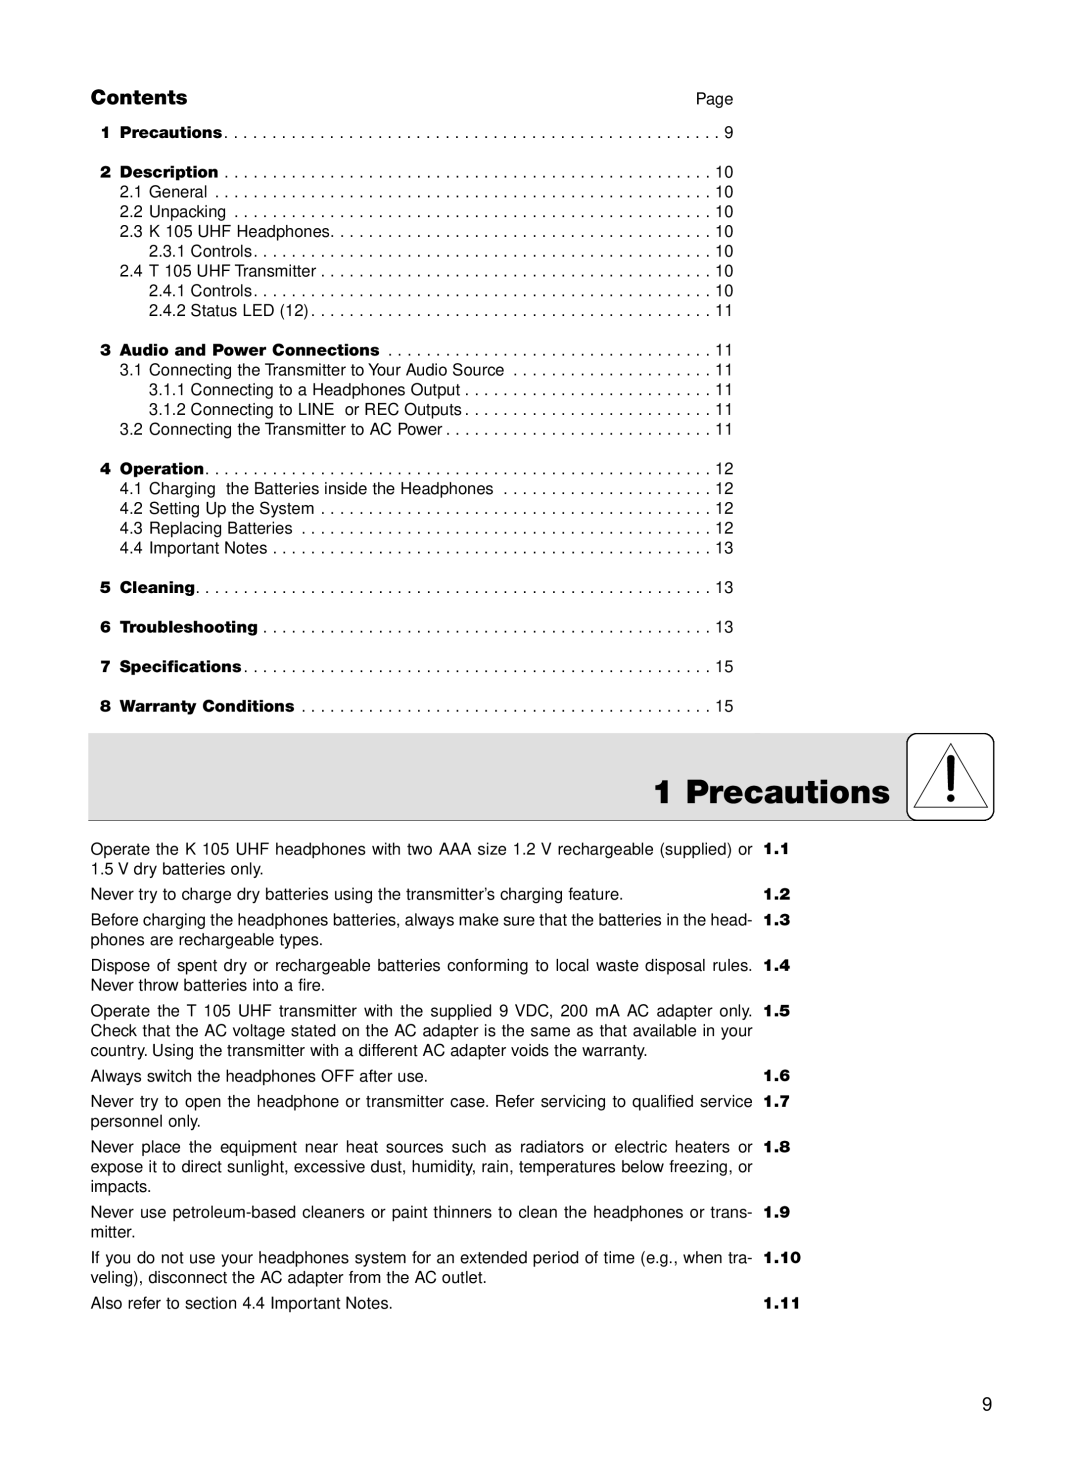 AKG Acoustics K 105 UHF manual Precautions, Contents, 1.10, 1.11 